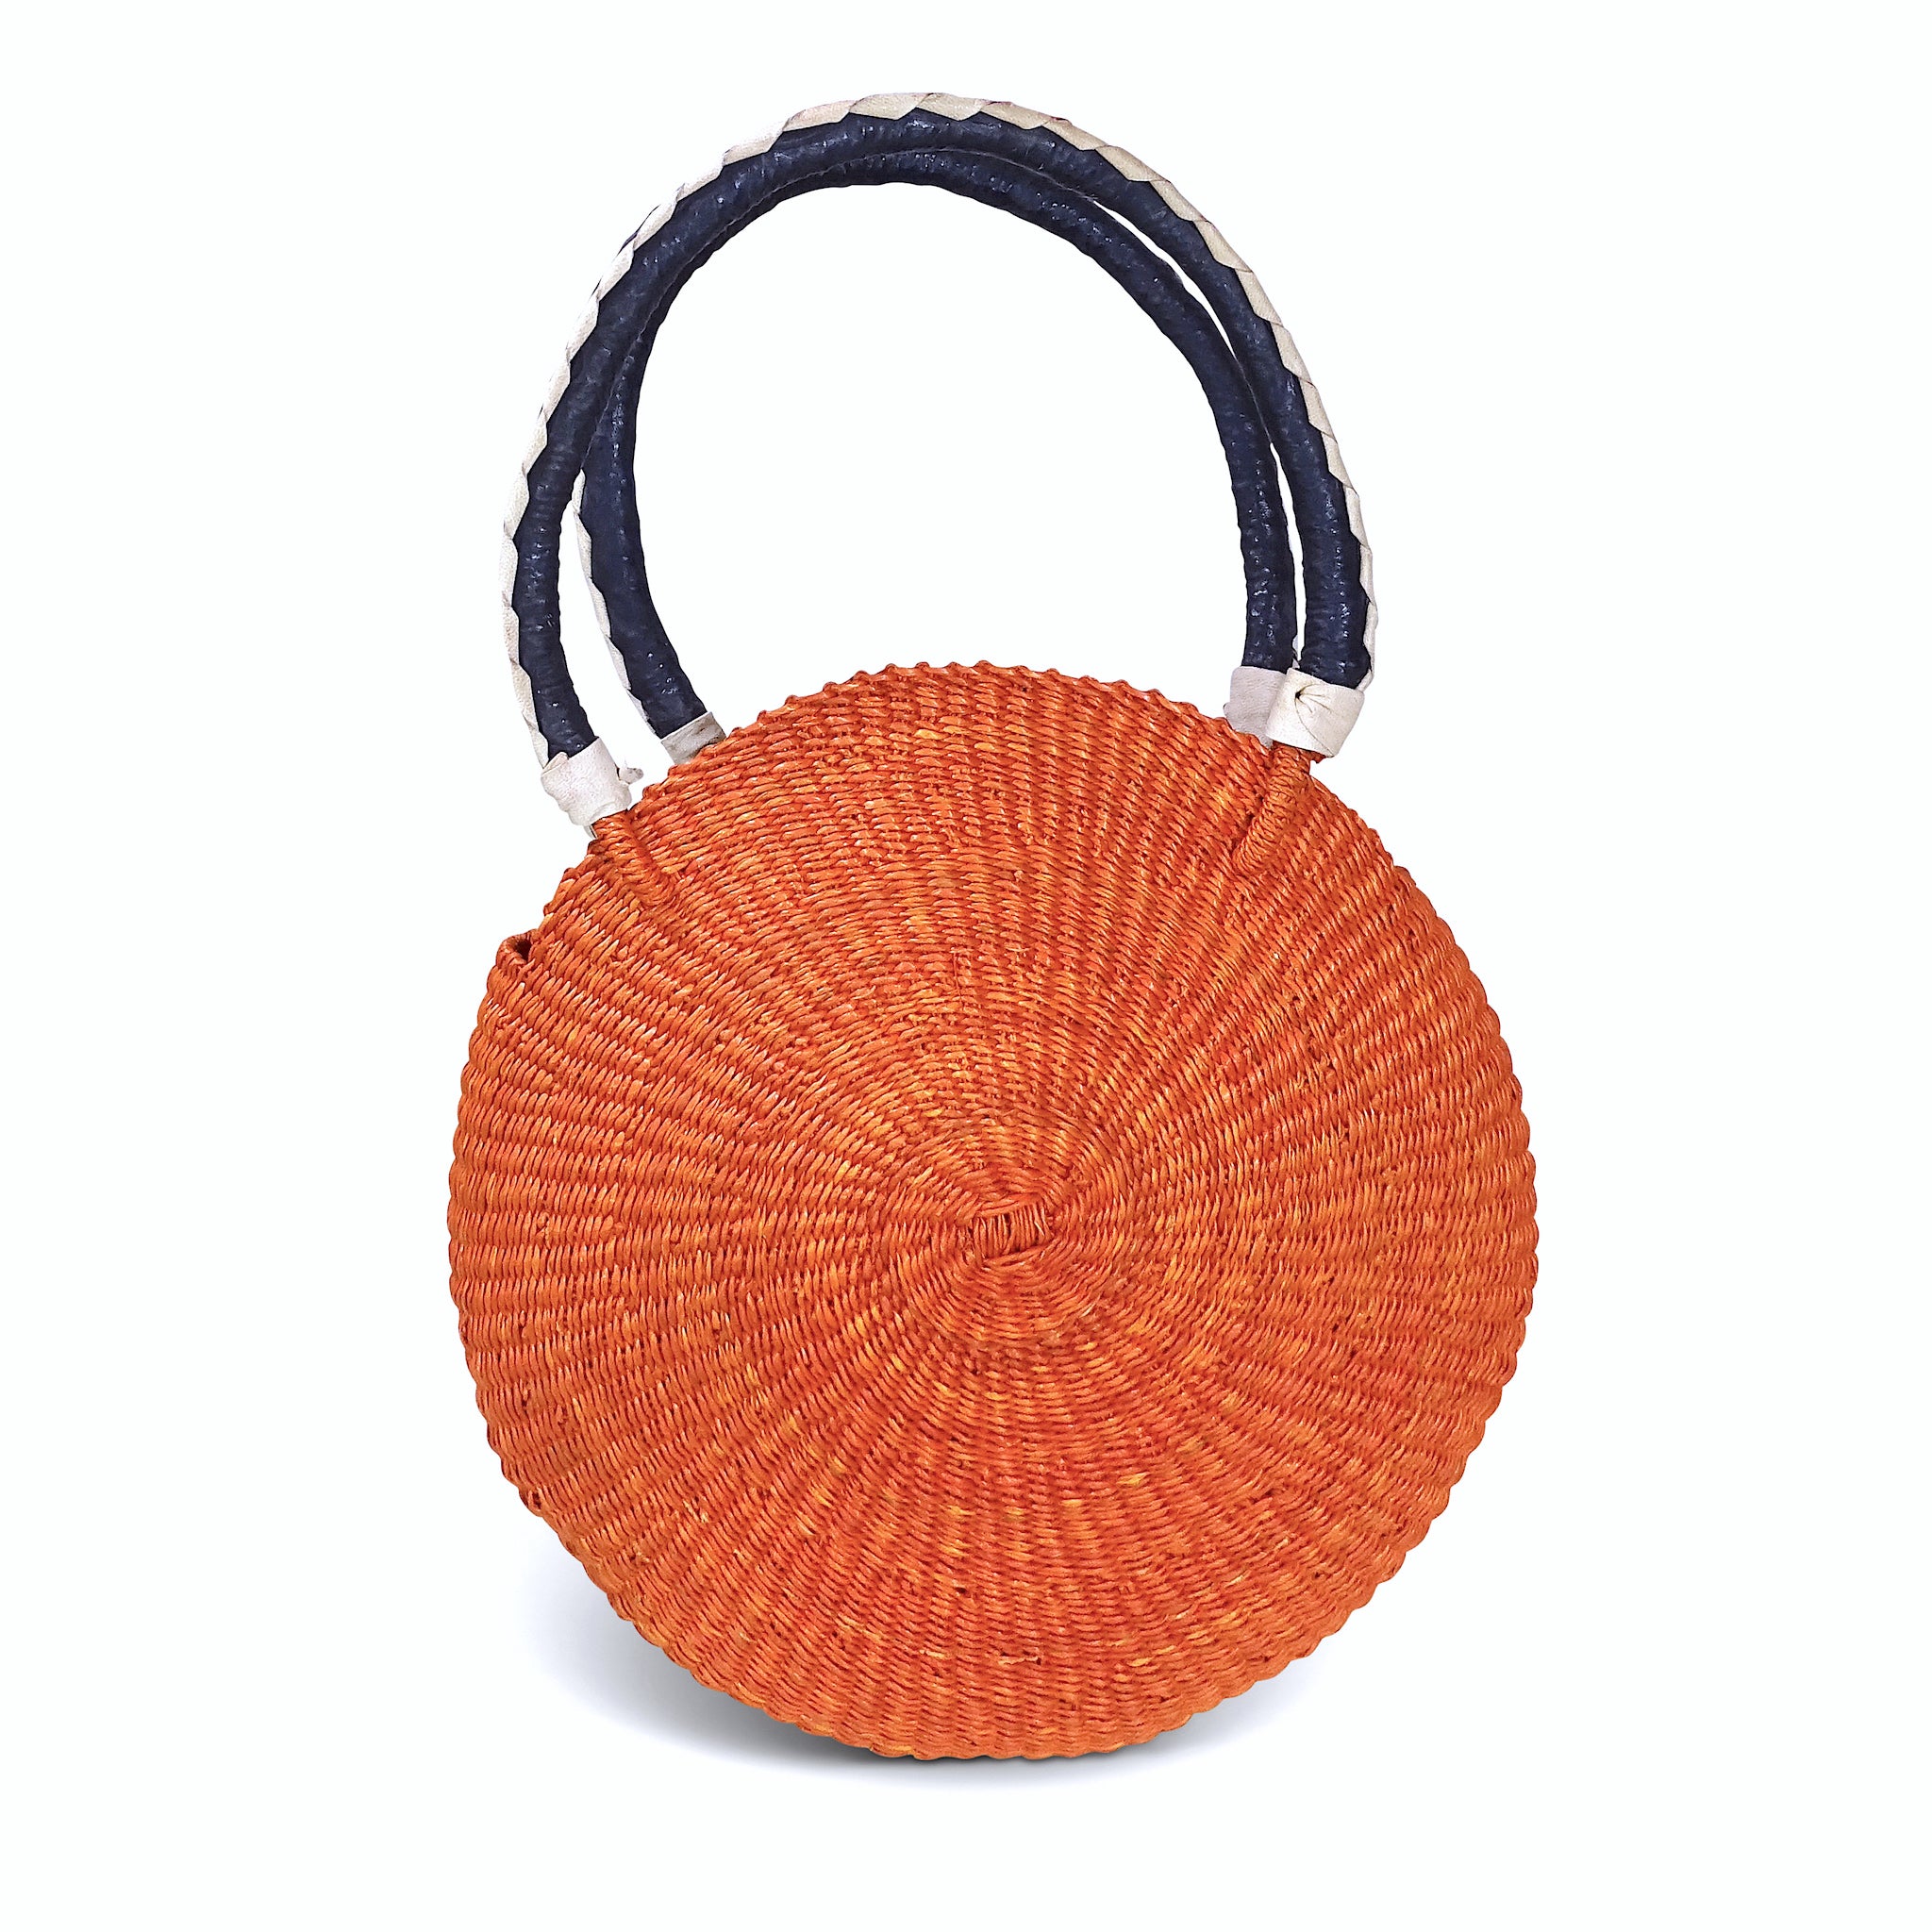 Jute Sisal Round Woven Basket Bag Tote Rawhide Handles Handbag Purse Kenyan  | eBay